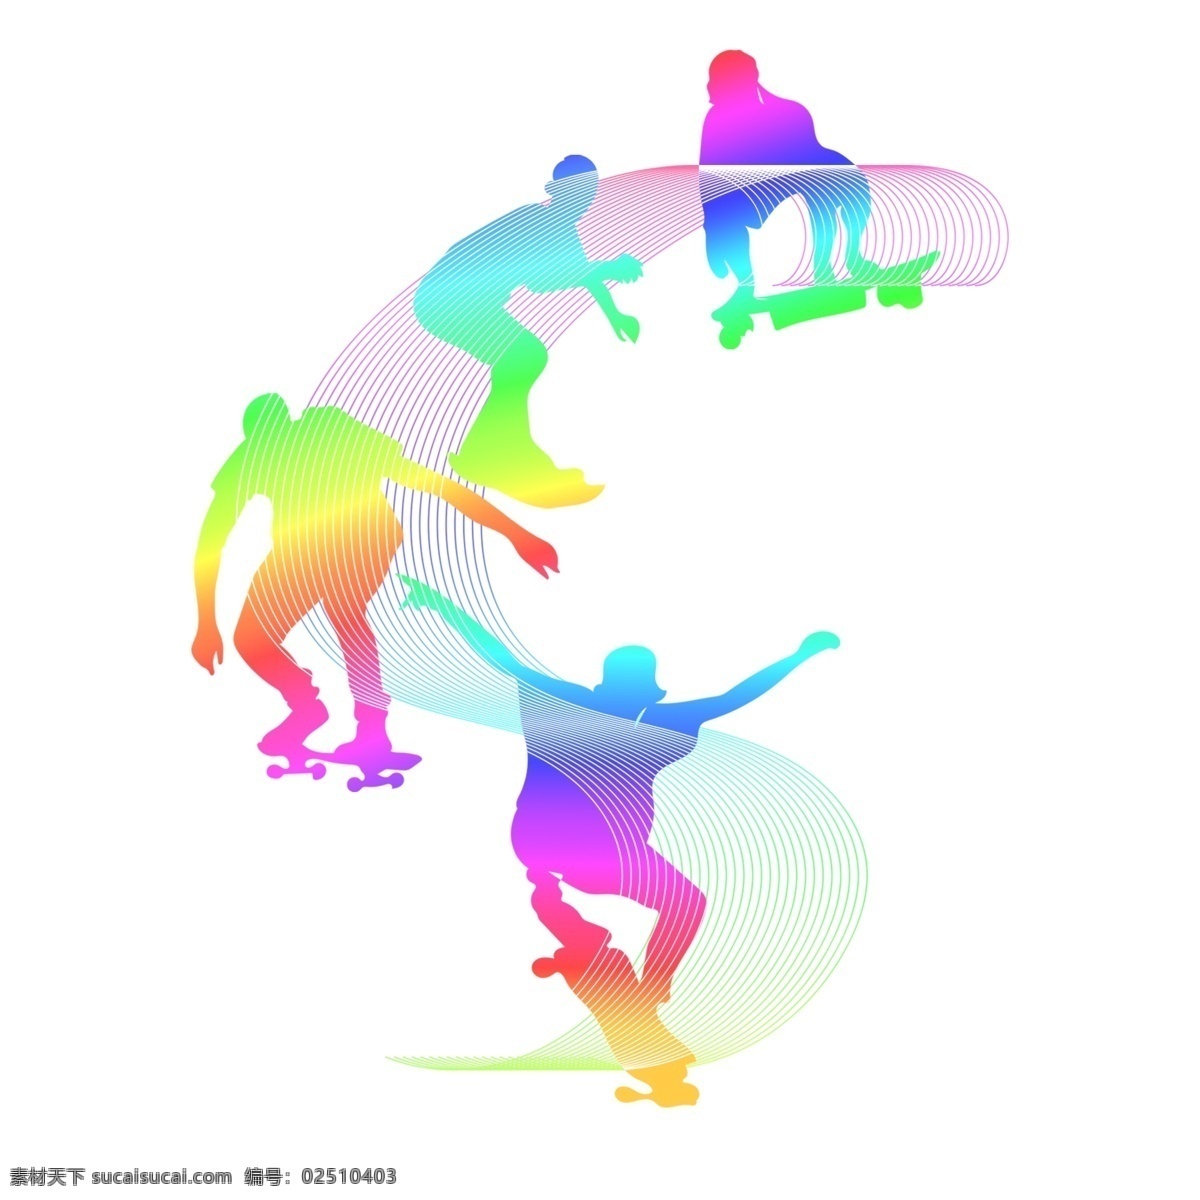 各类 运动 人群 炫彩 剪影 滑板车 元素 滑板 健康 体能 男孩 时尚 炫酷 运动员 热量 商业 原创 免抠图 动作 动态